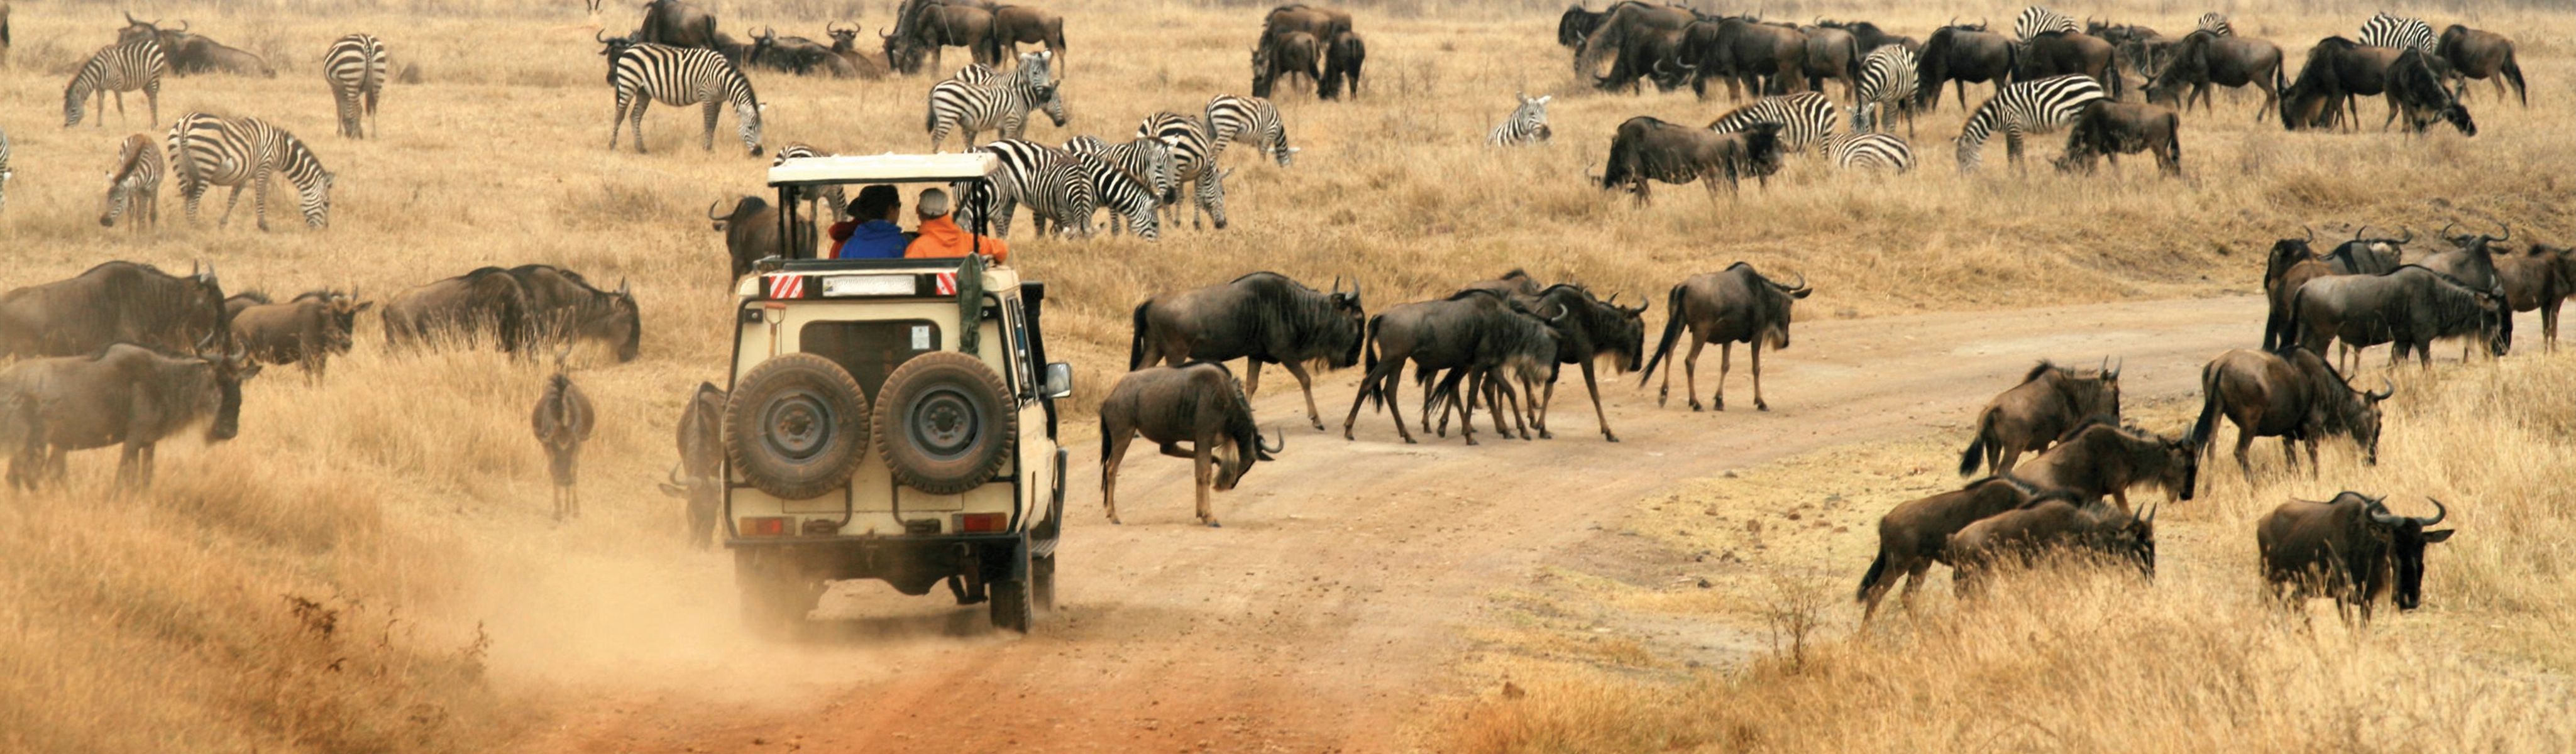 safaris near nairobi